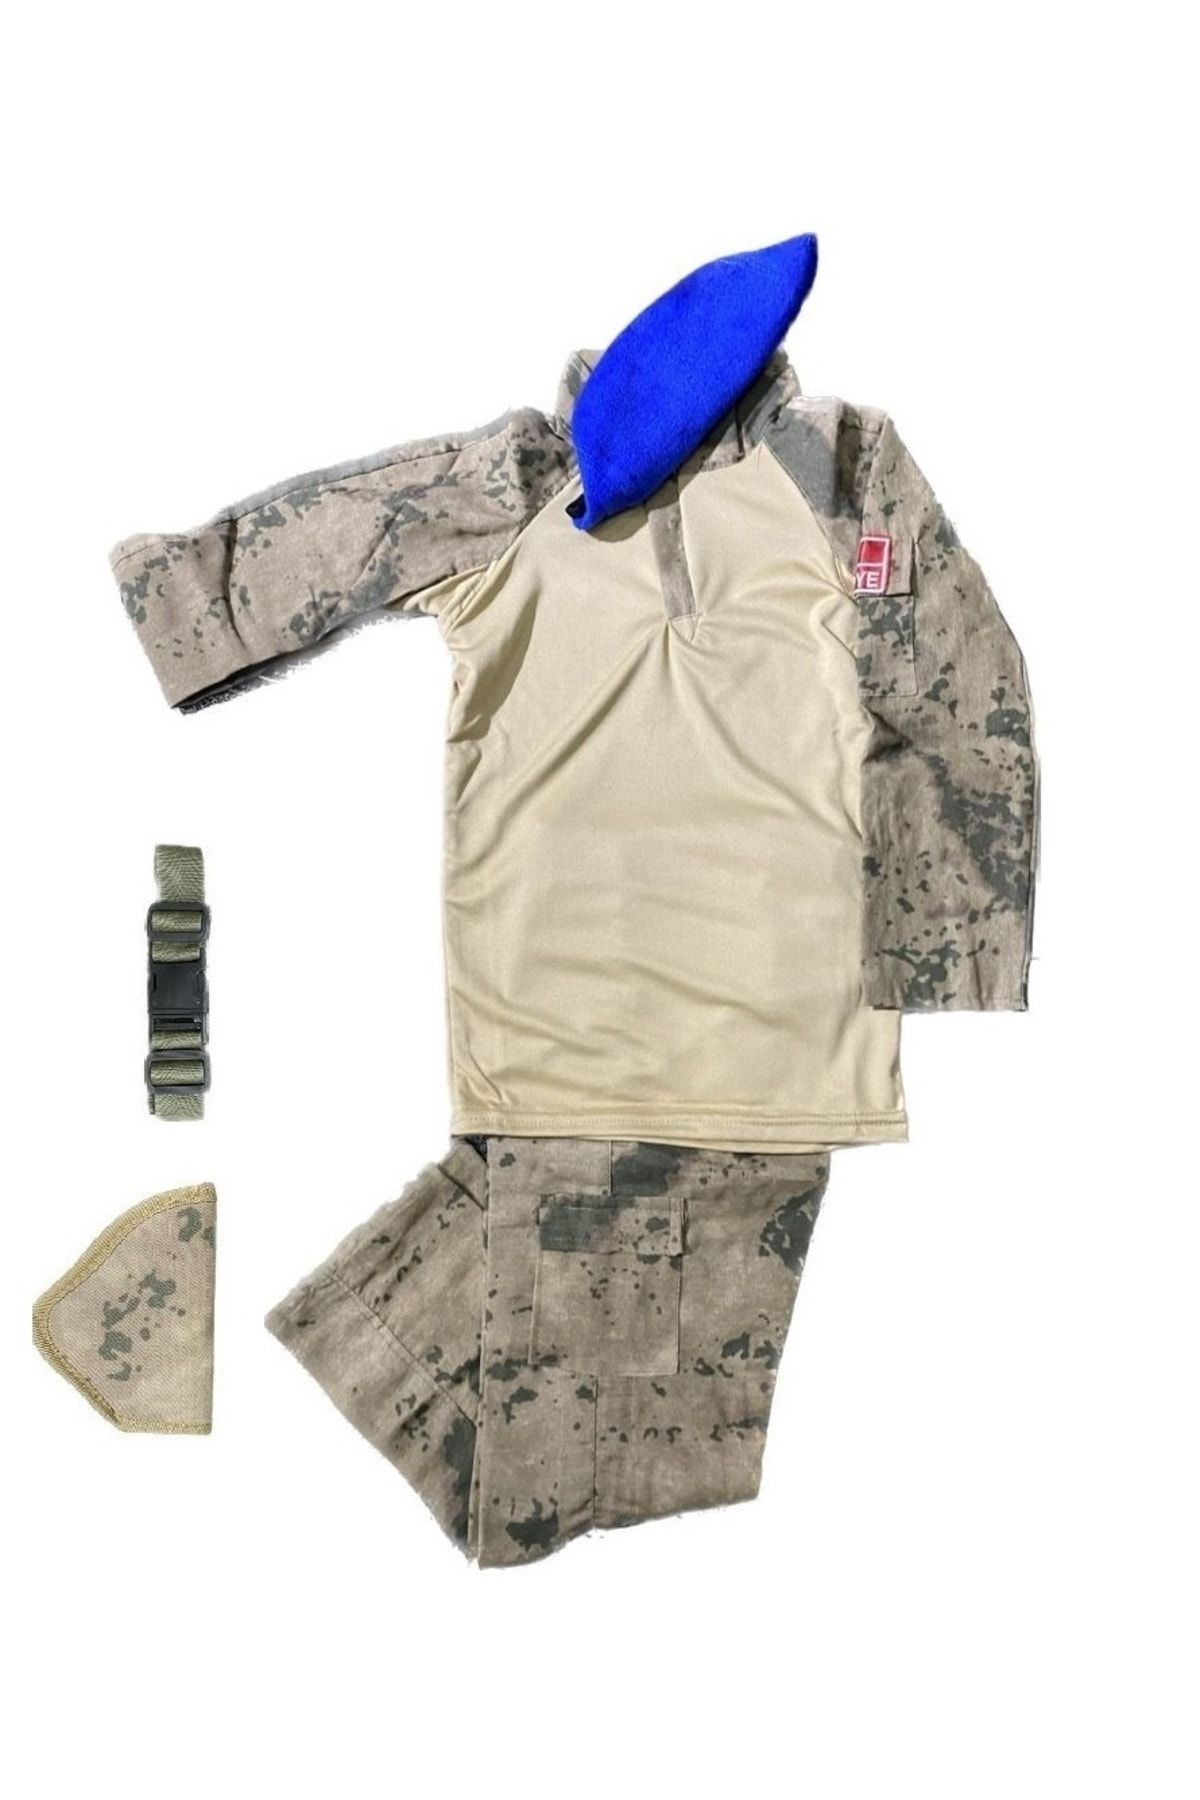 Mini Askeri Malzeme ve Tactical Kamuflaj Çocuk Takımı / Kostümü